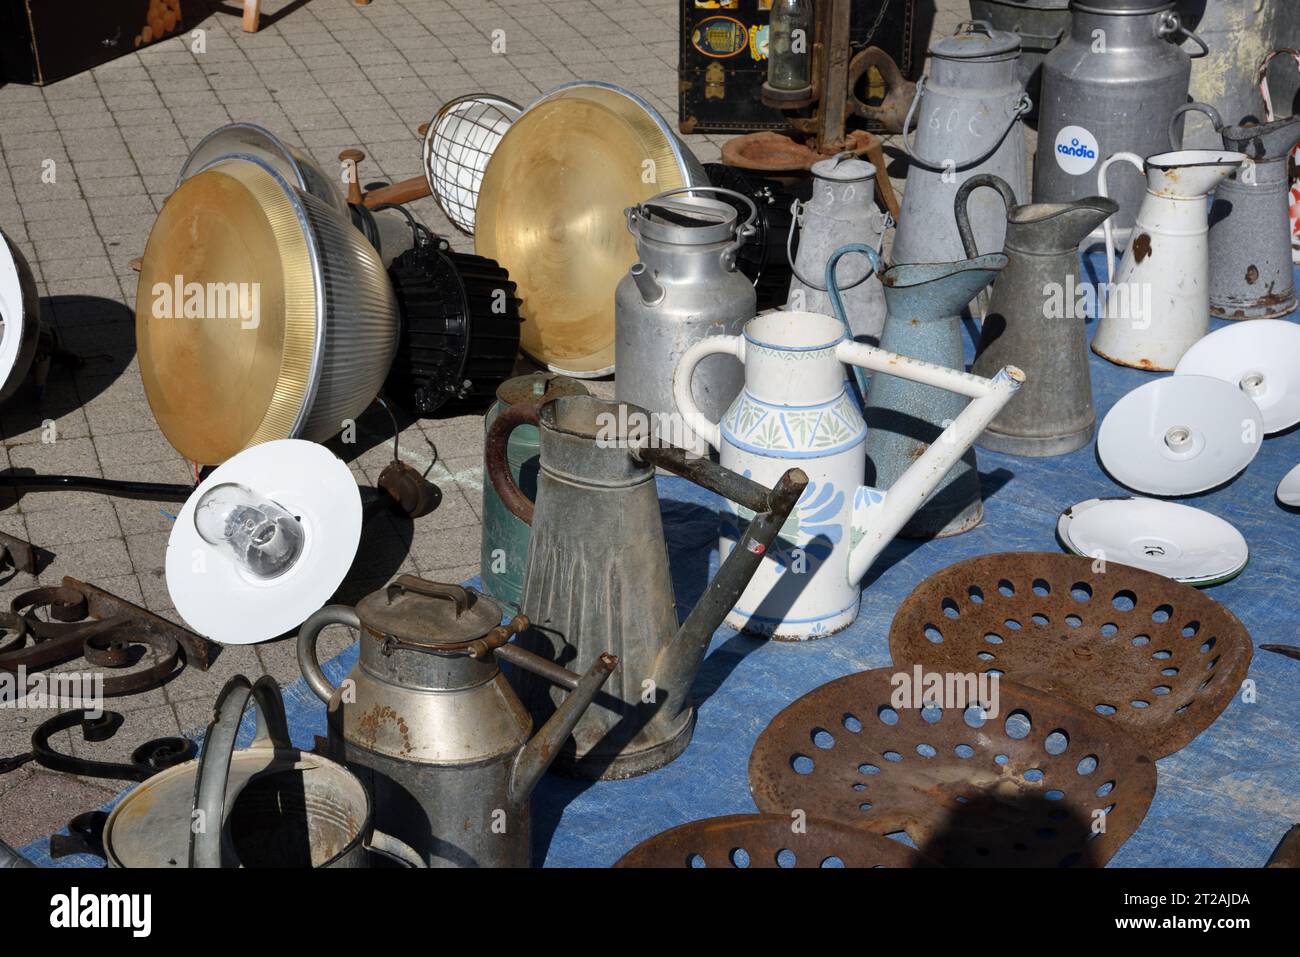 Vintage-, Sammel- oder Sammlerlampen, Gießkannen und Milchkannen am Marktstand, Antiquitätenmarkt oder Brocante Provence Frankreich Stockfoto